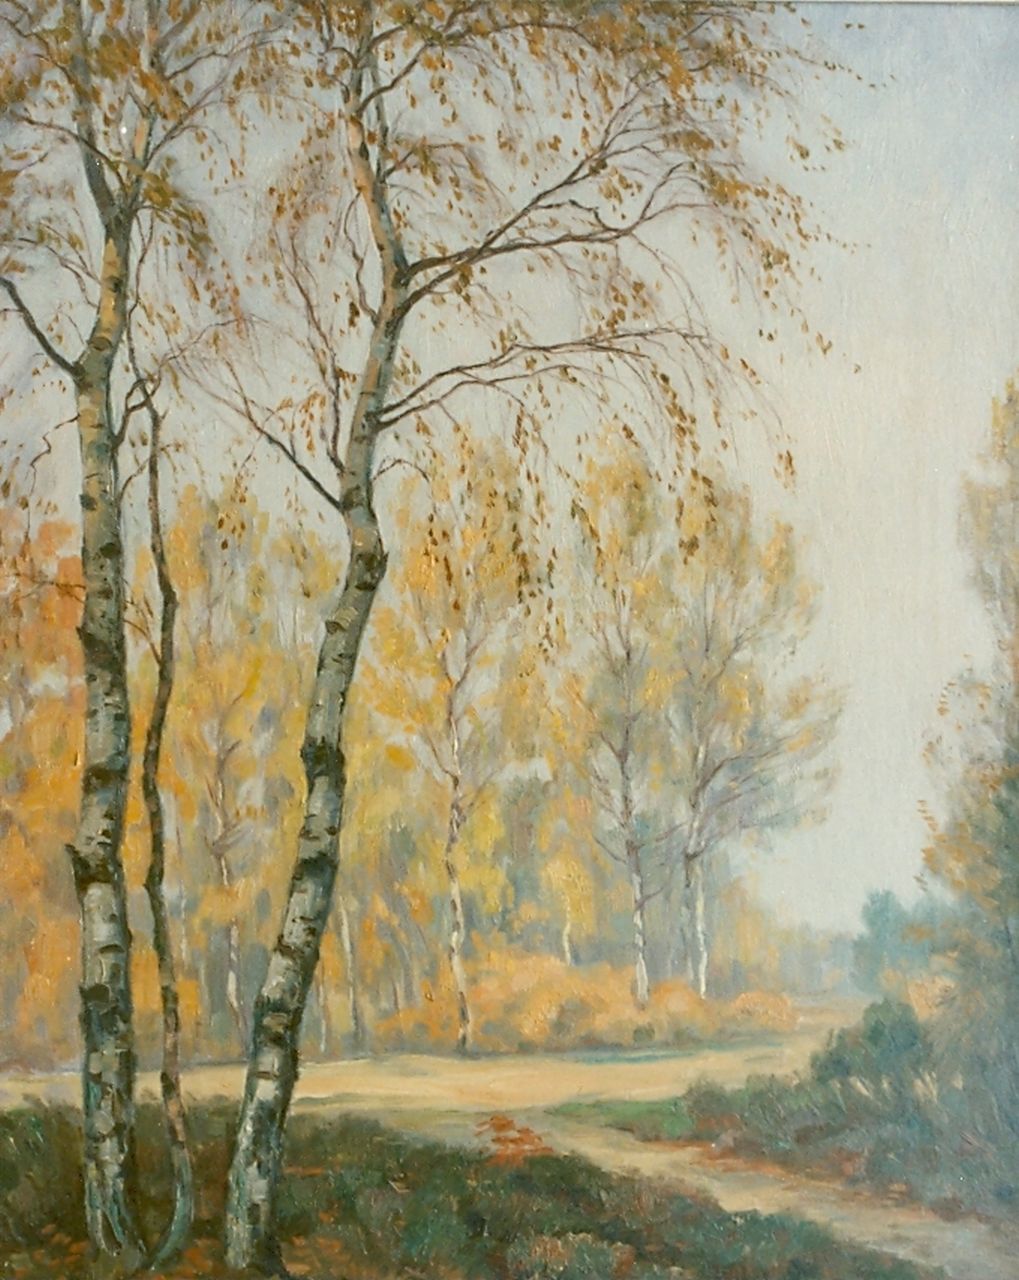 Meijer J.  | Johannes 'Johan' Meijer, Autumn landscape, oil on canvas 50.0 x 40.0 cm, signed l.r.